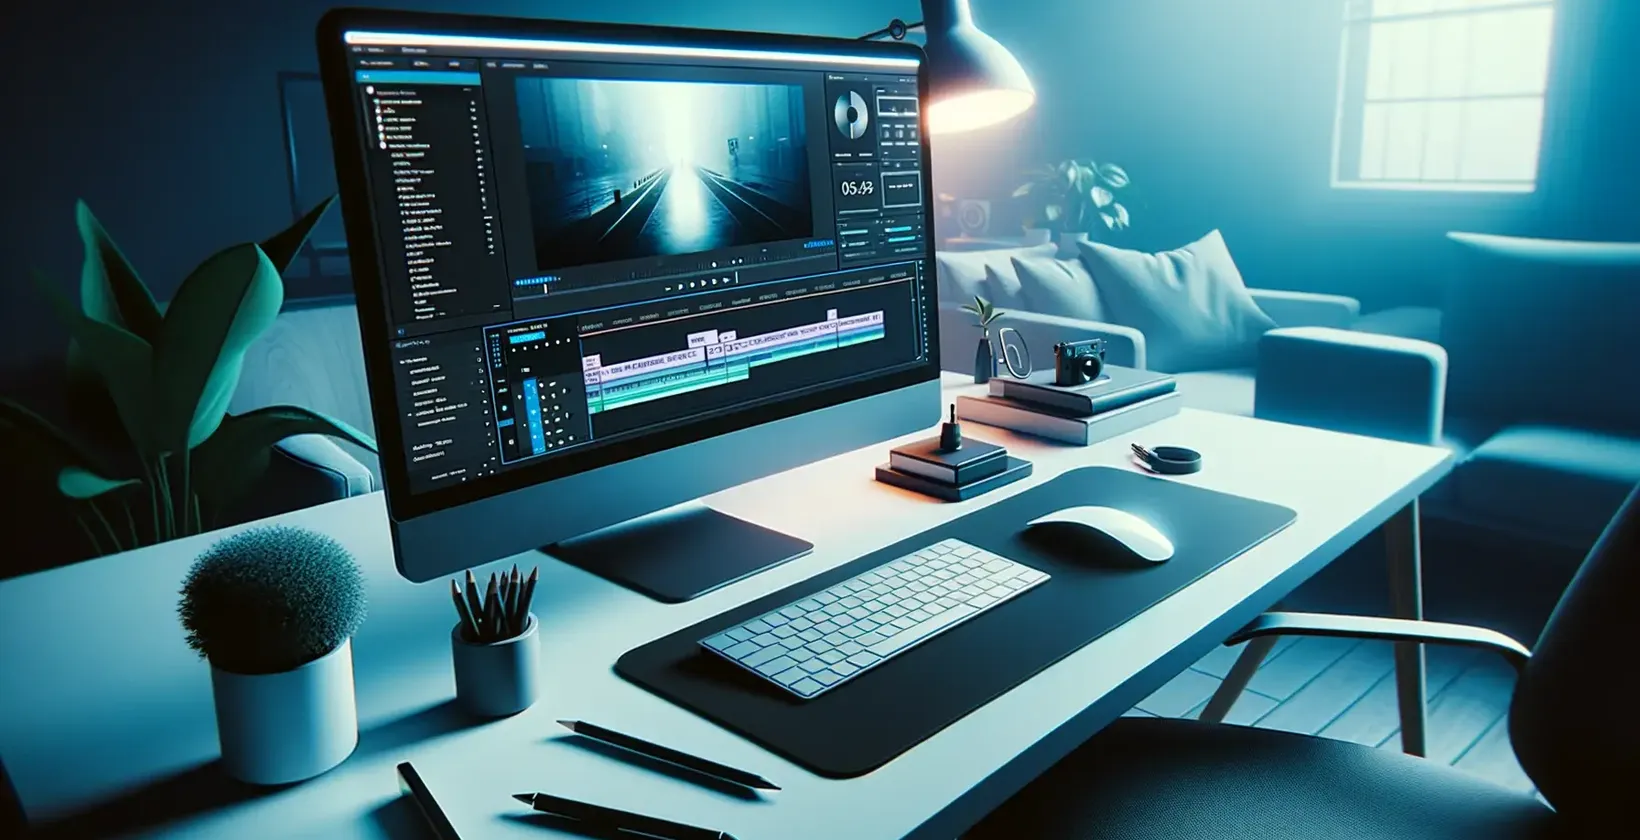 Adicione texto ao vídeo com Adobe After Effects ilustrado por um espaço de trabalho de edição elegante com luz azul